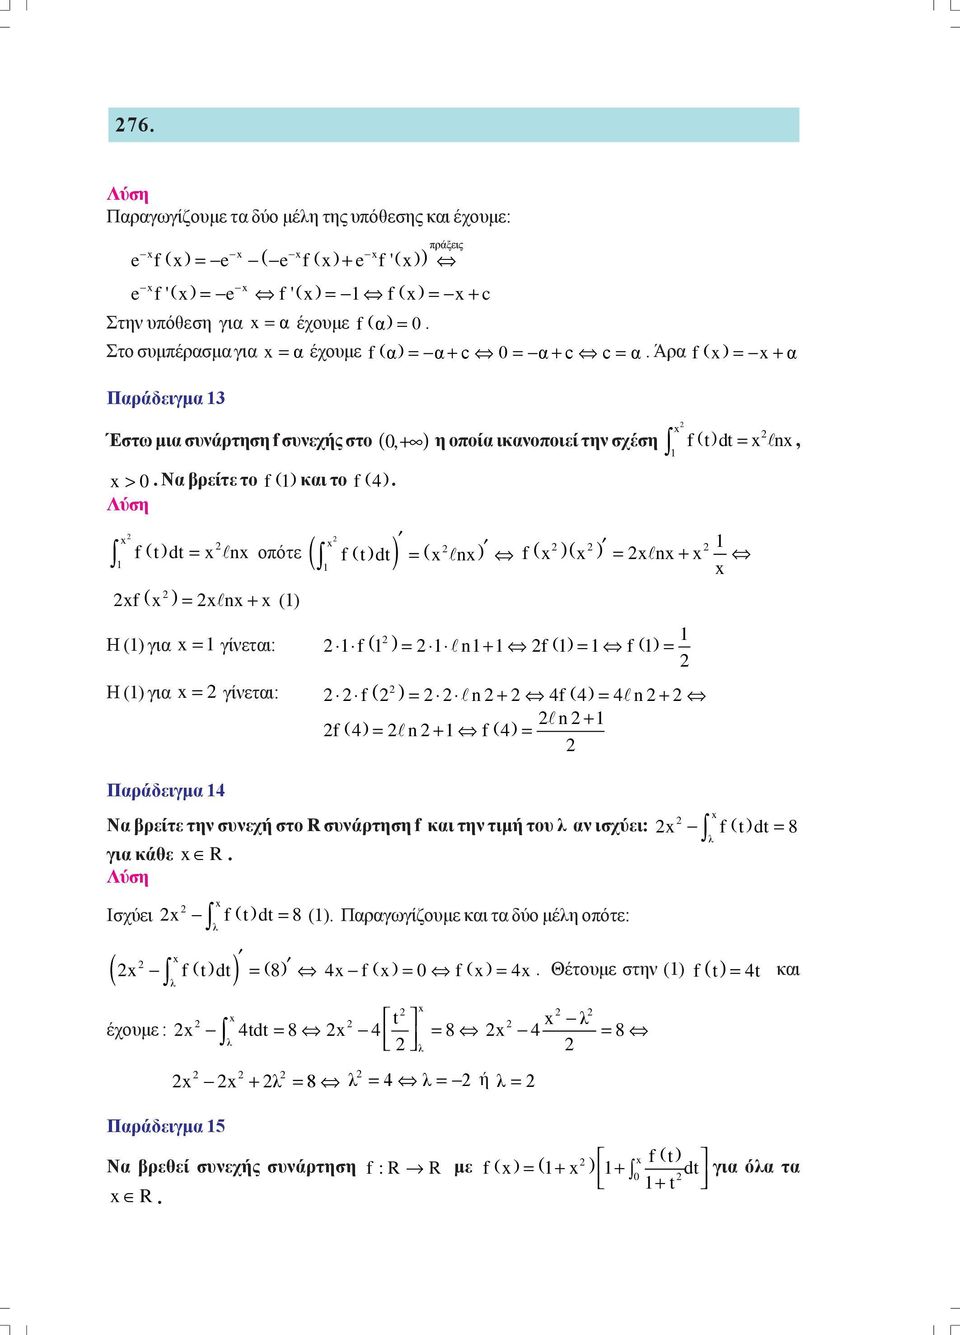 γίνετι: ( f = n+ f( = n + n+ f ( = n + f ( = Πράδειγμ Ν ρείτε την συνεχή στο R συνάρτηση f κι την τιμή του λ ν ισχύει: f ( t dt = 8 λ γι κάθε R Ισχύει f ( t dt = 8 ( Πργωγίζουμε κι τ δύο